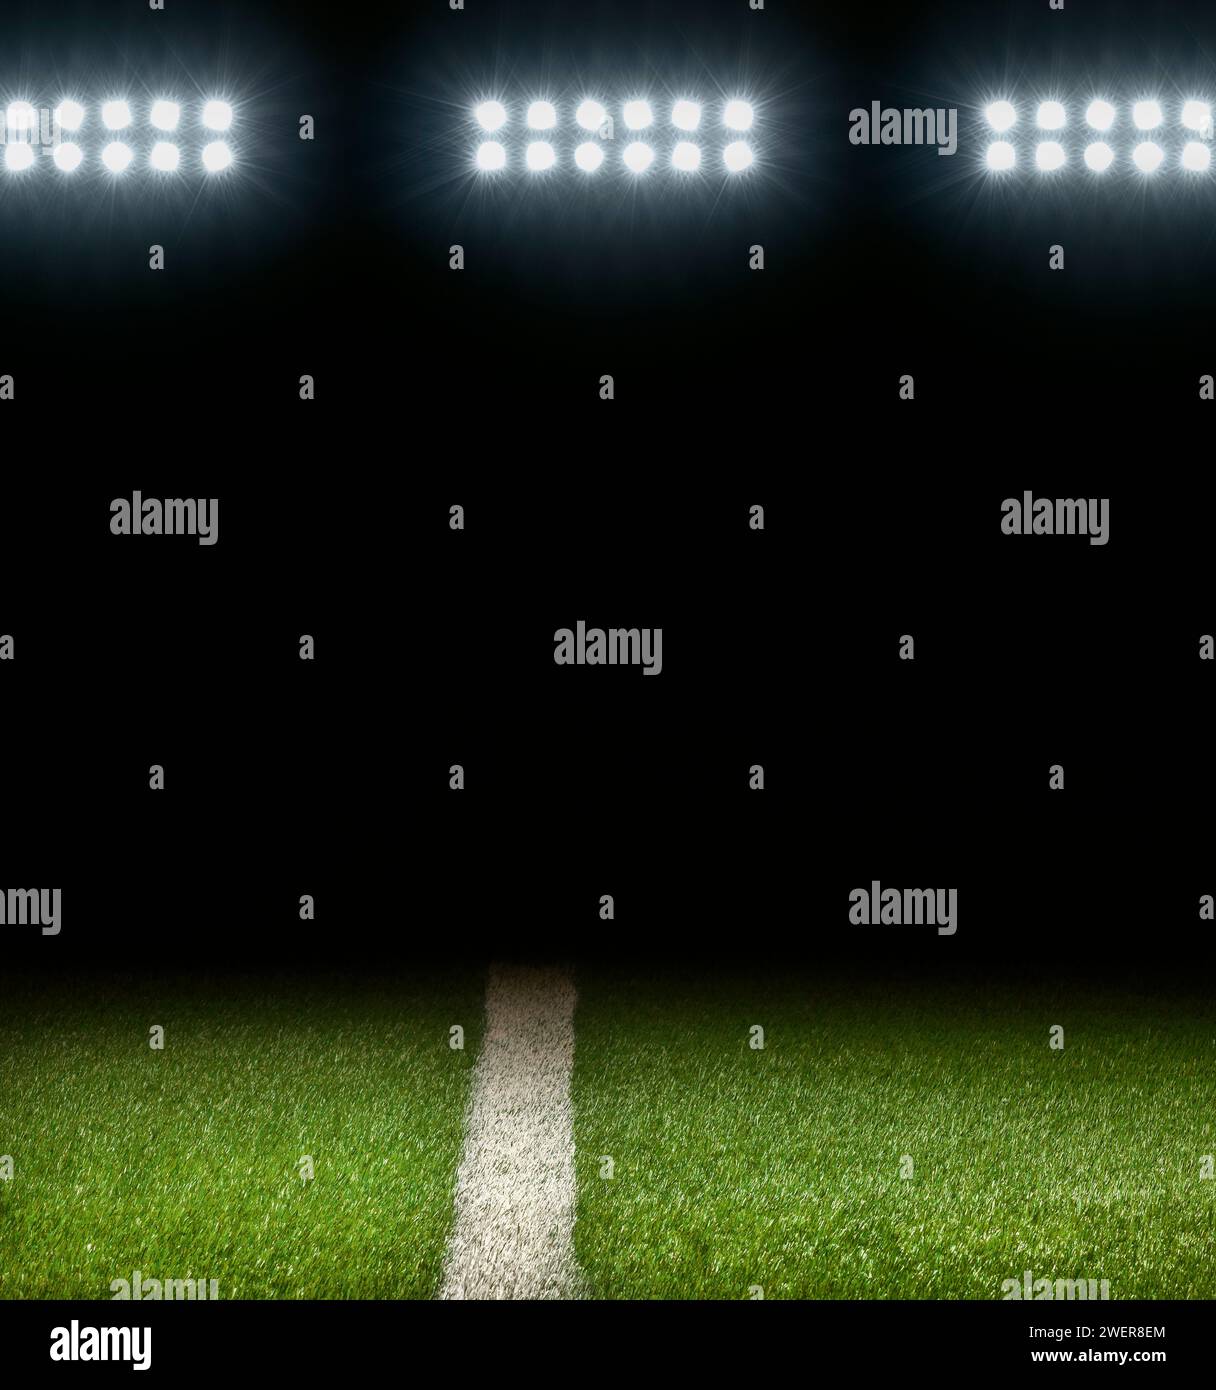 Campo atlético de hierba con raya blanca y fondo oscuro debajo de las luces del estadio Foto de stock